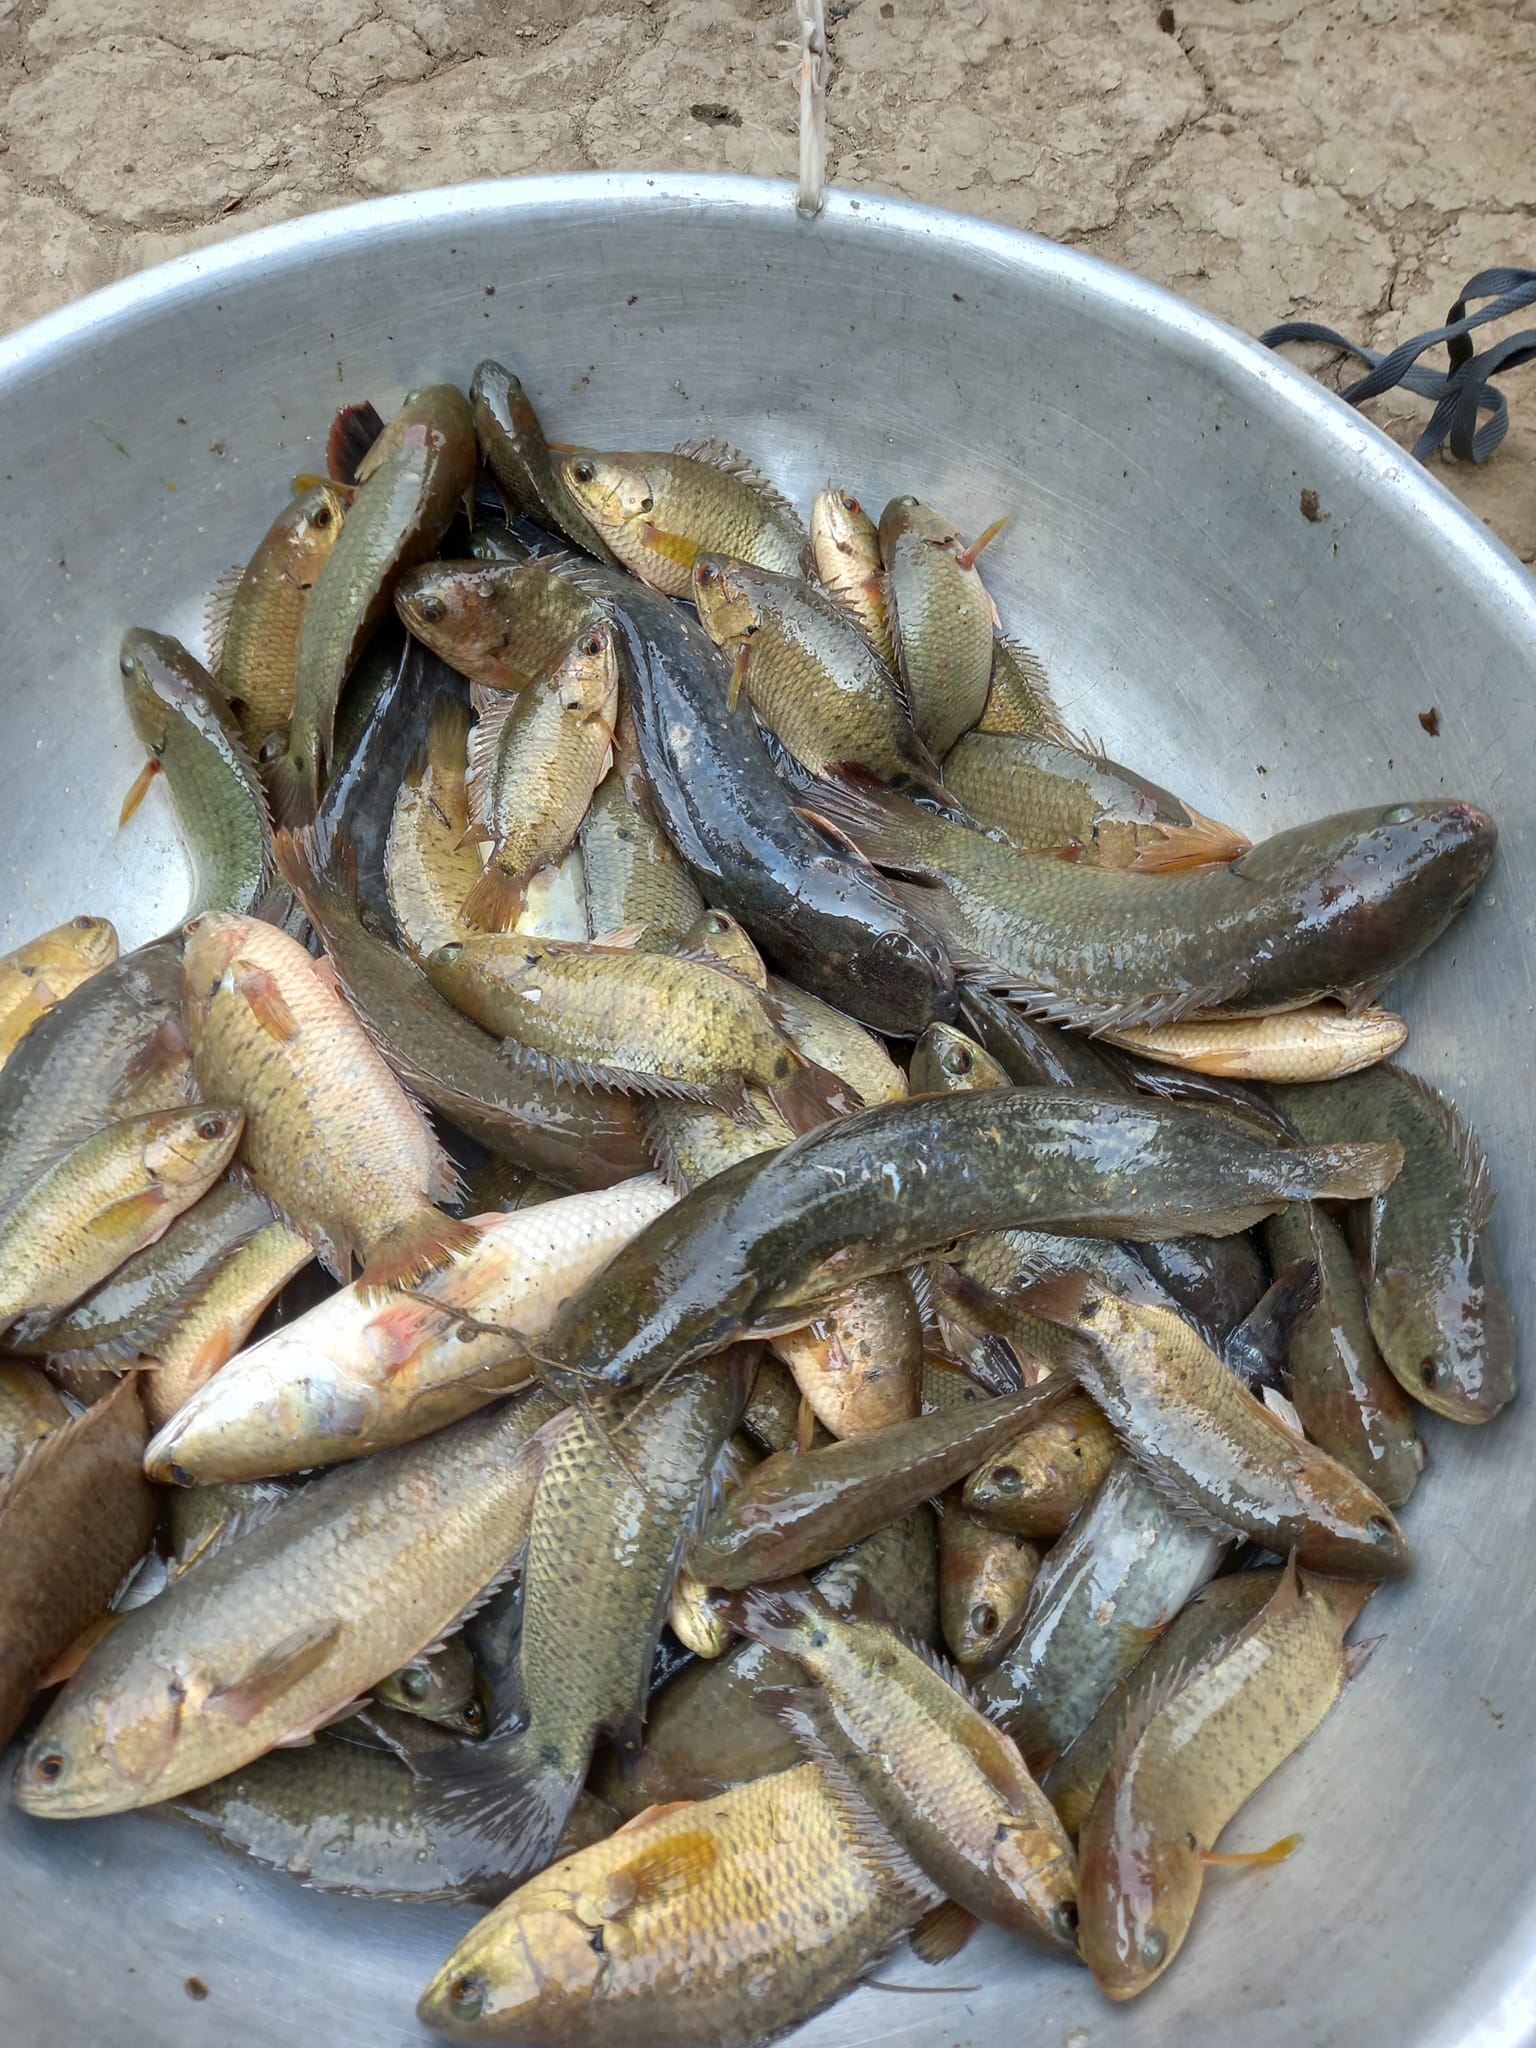 Mùa câu cá rô đồng ở Tây Ninh, thích nhất là câu cá rô đồng trong ruộng lúa nếp - Ảnh 4.